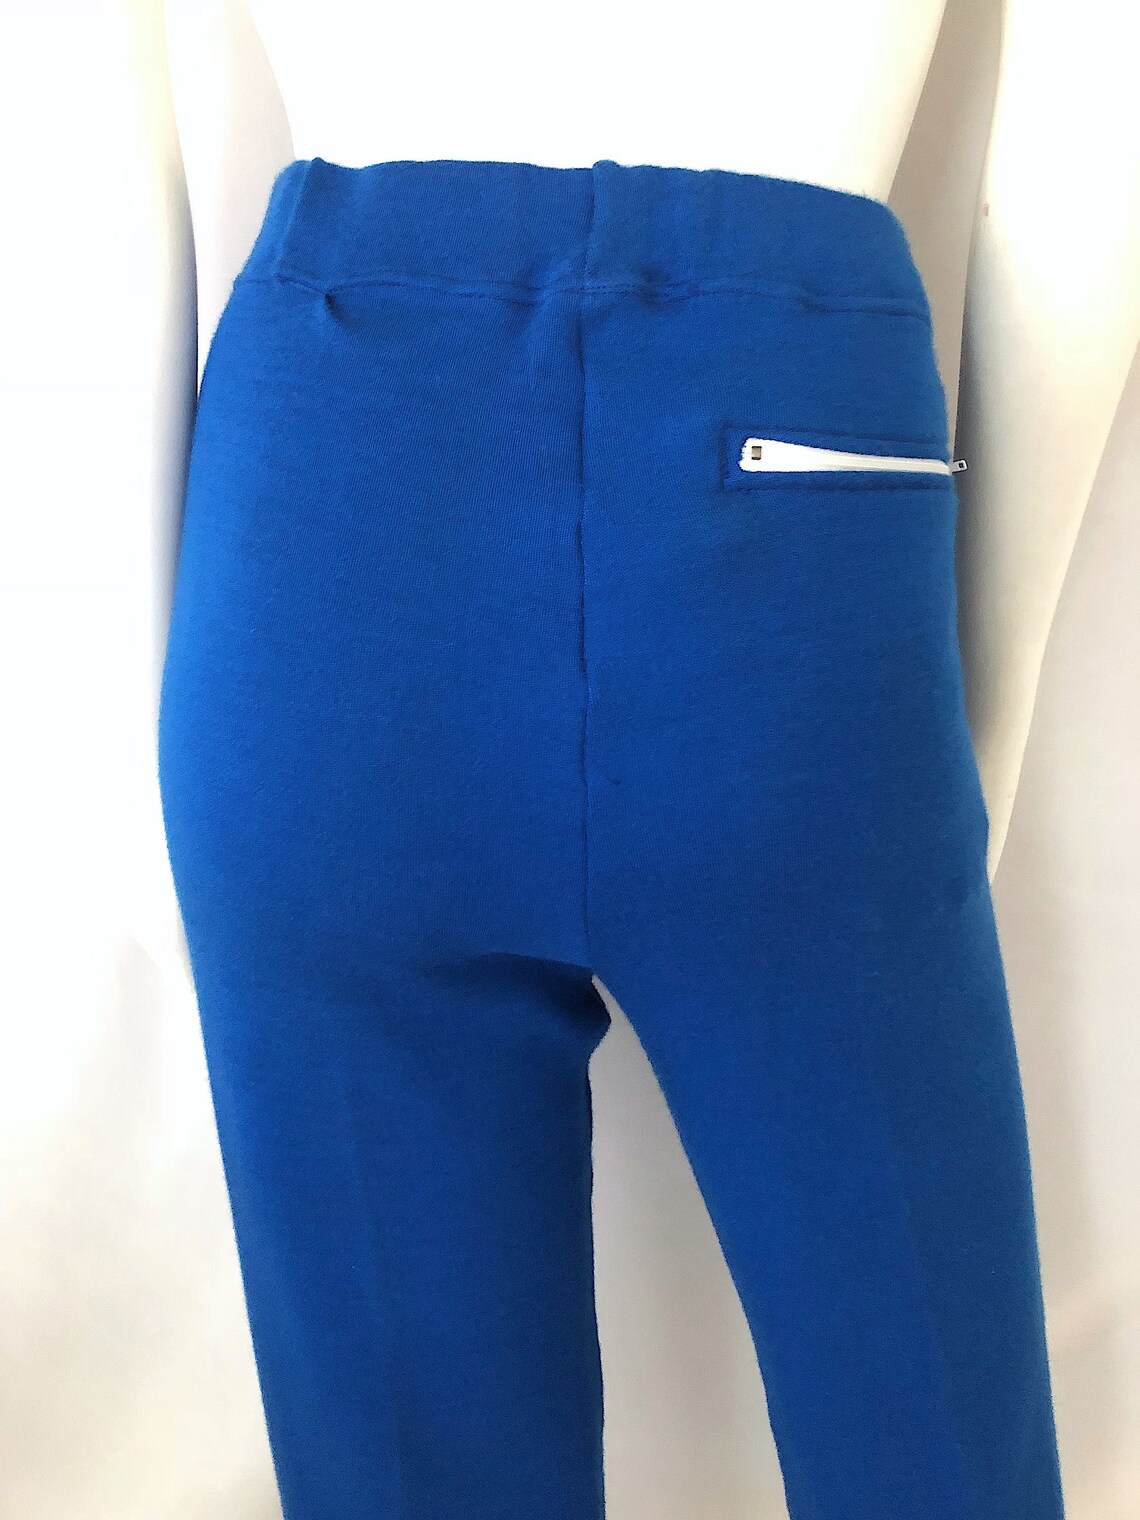 Vintage Unisex 70's Blue Acrylic Pants High Waisted | Etsy